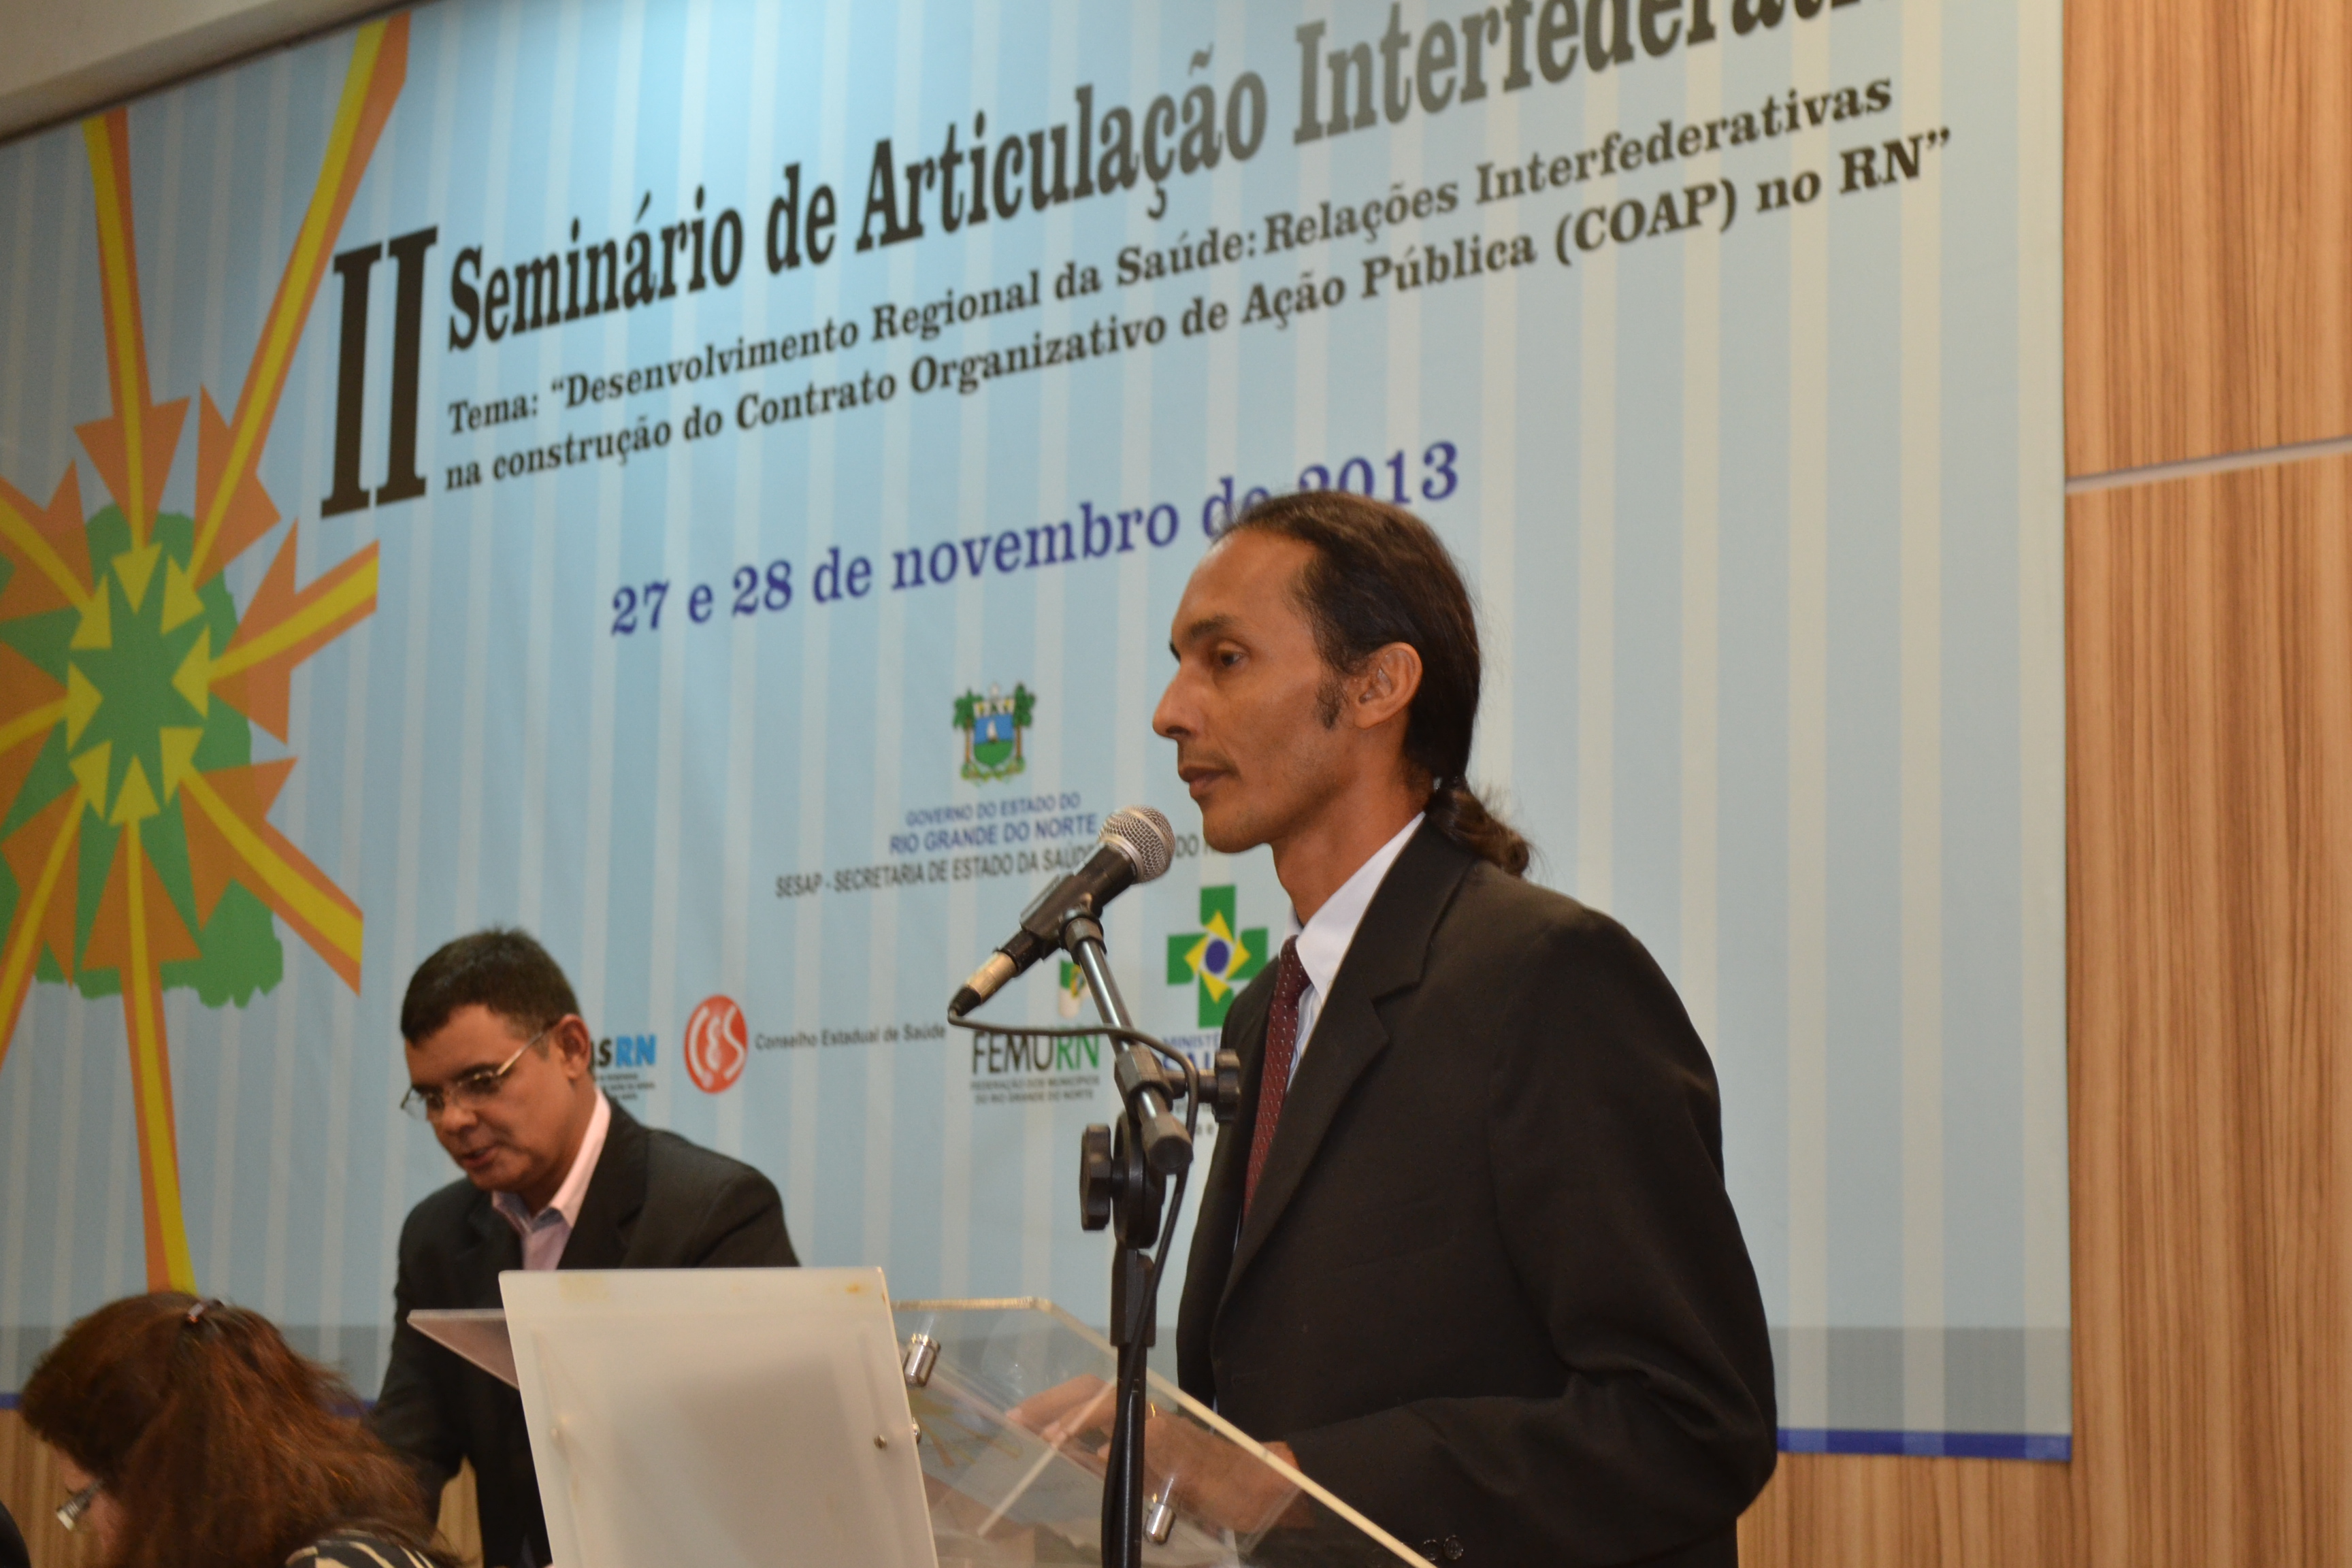 II SEMINÁRIO DE ARTICULAÇÃO INTERFEDERATIVA DO COSEMS-RN: 27 e 28/11/2013